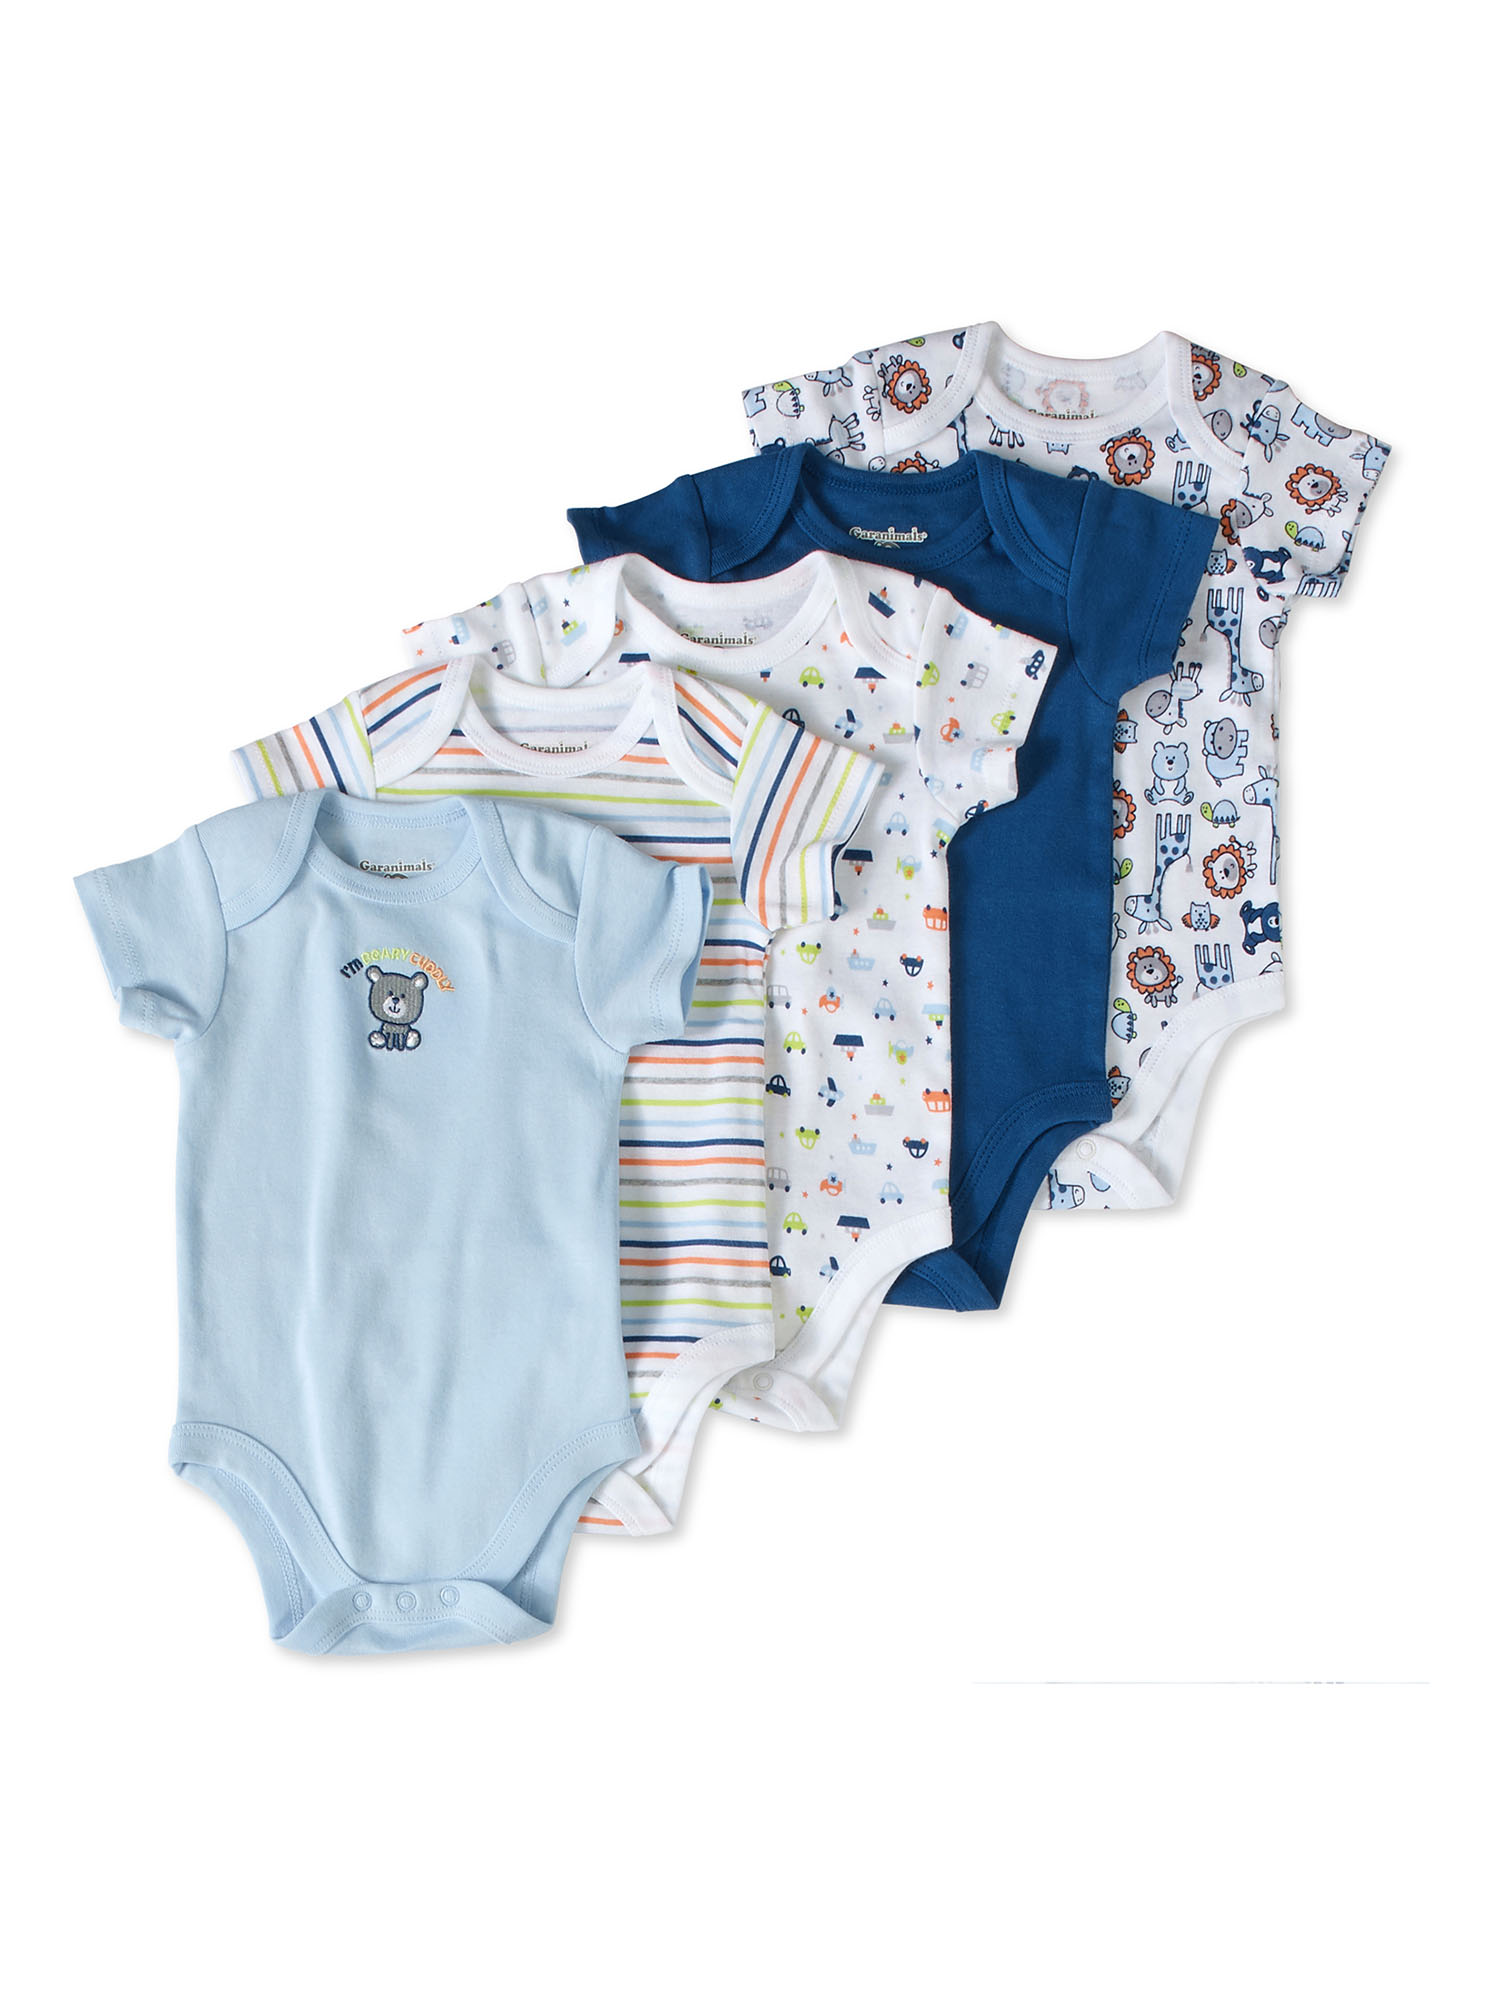 Garanimals Newborn Baby Boy Shower Gift Set, 20-Piece, Preemie-6/9 Months - image 4 of 7